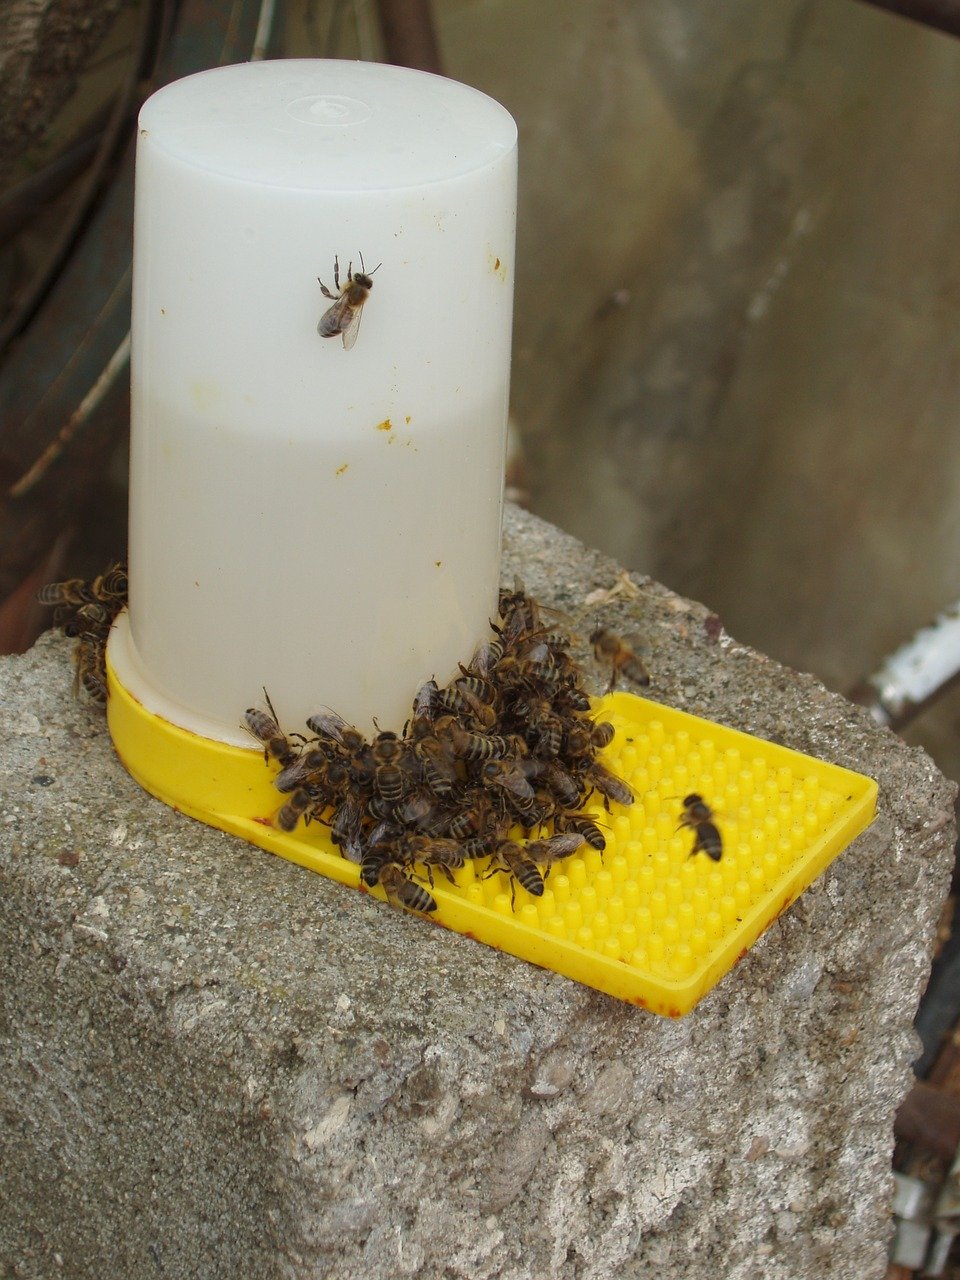 Les fourmis sont-elles un danger pour les abeilles et la ruche ?